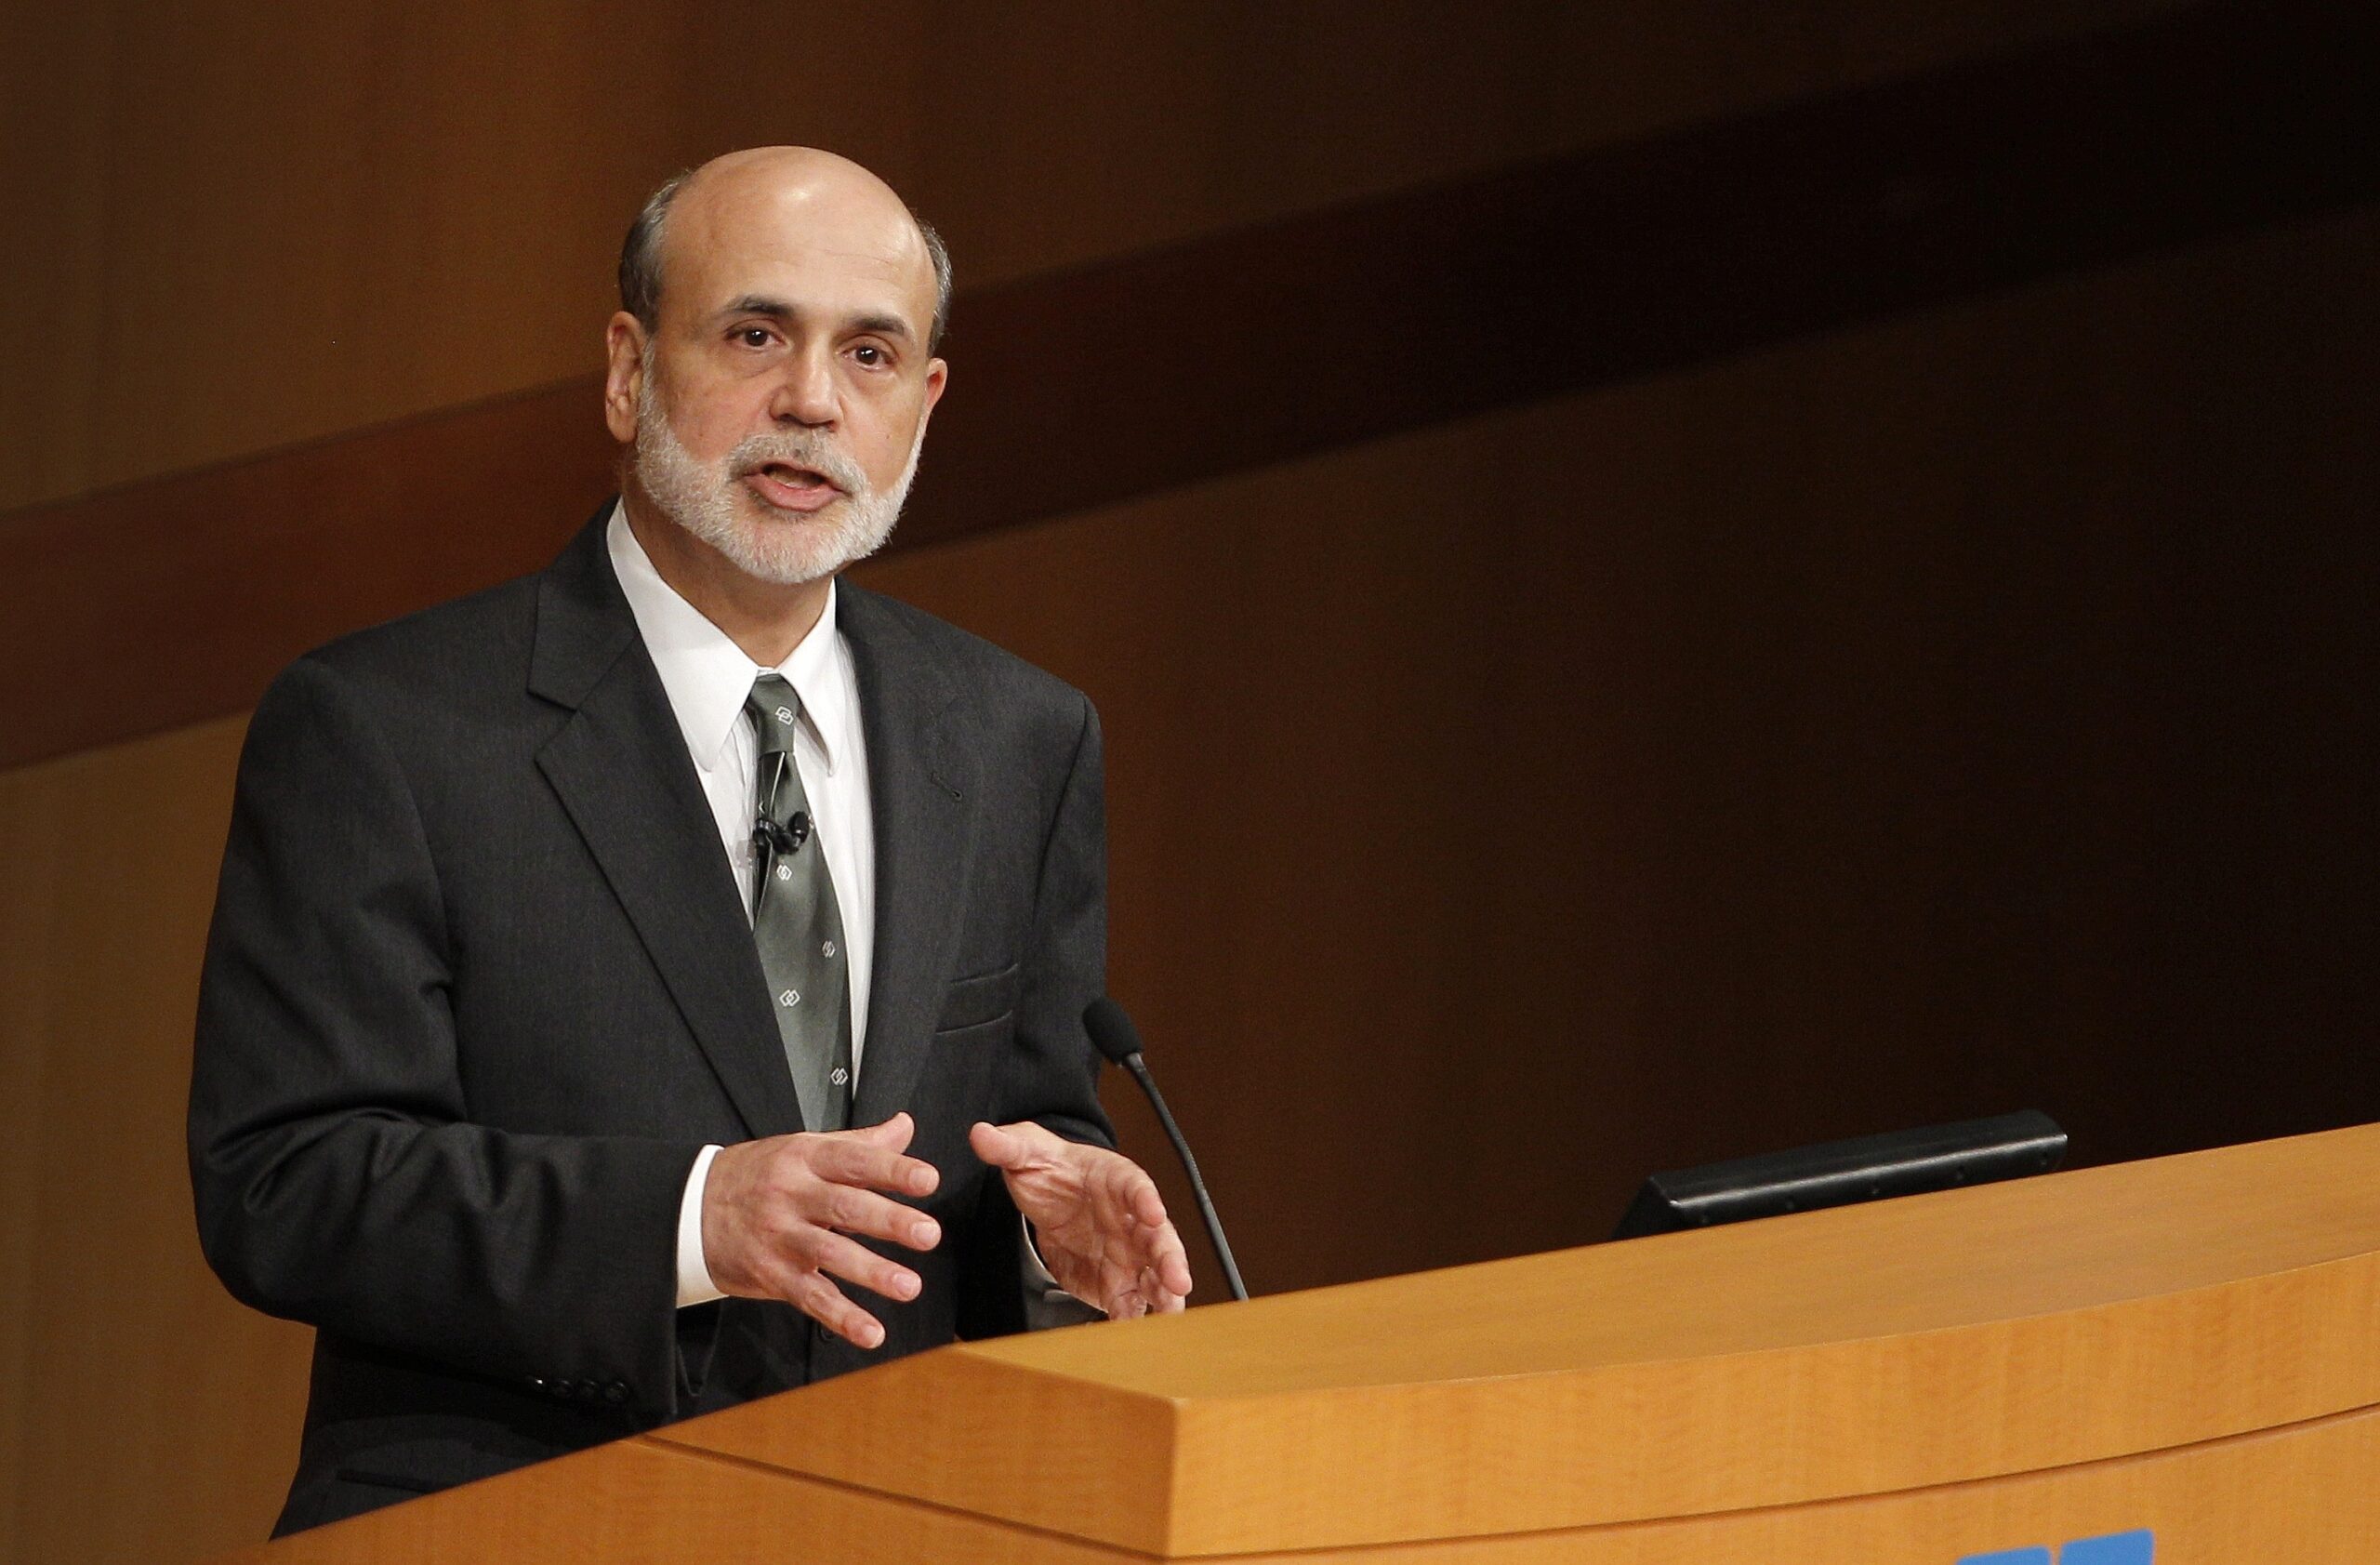 ...der Chef der US-Notenbank Ben Bernanke. Er ist im Forbes-Ranking auf Platz 8. Nicht mit Millionen Gläubigern, sondern mit Millionen Gläubigen...